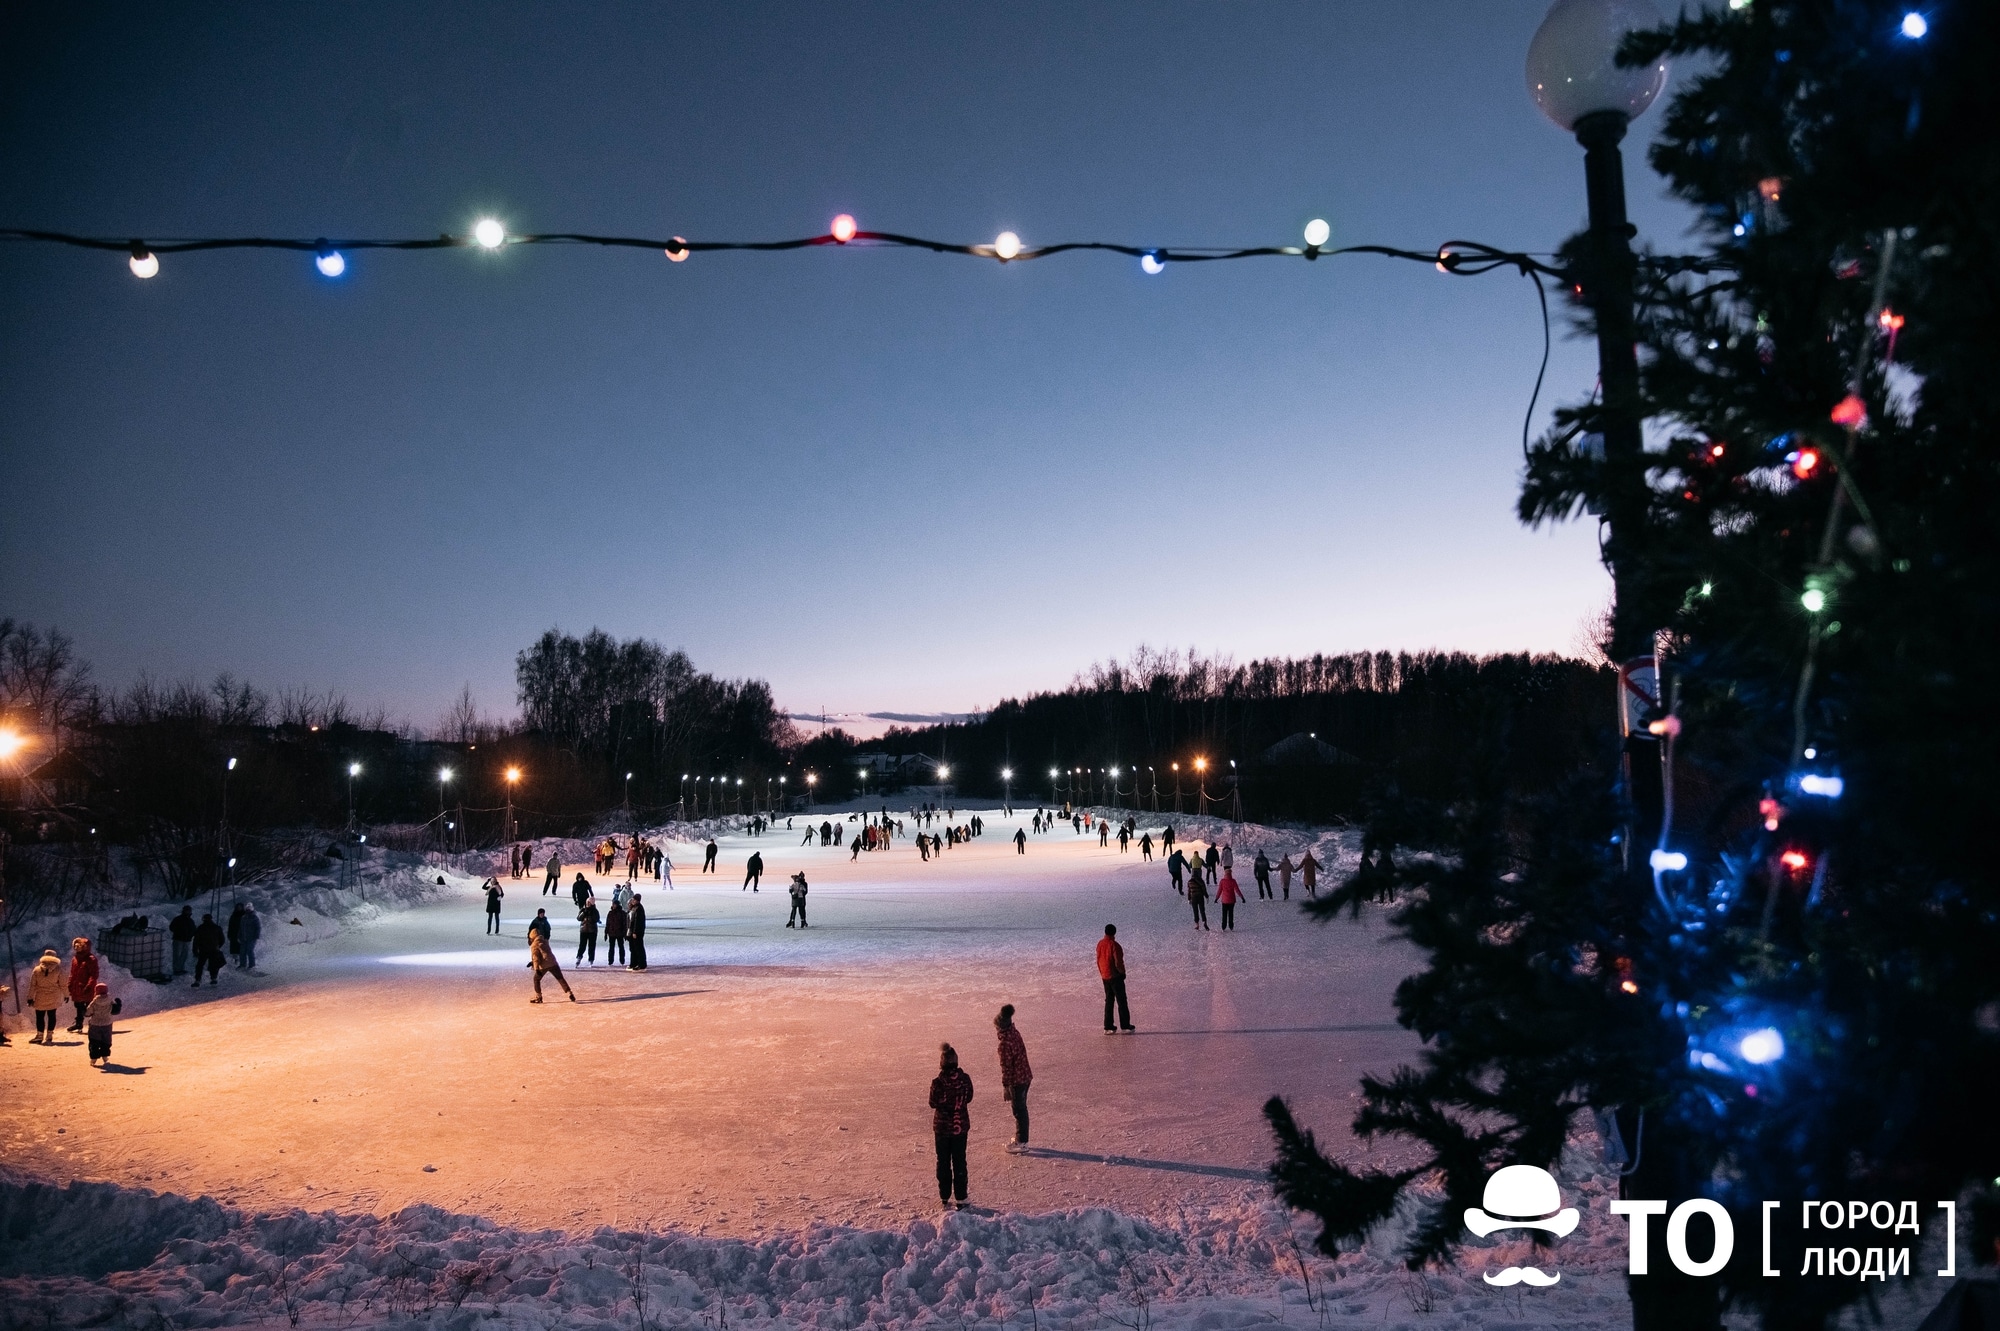 Новый год ❄, Томские новости, томск ледовые катки коньки прокат провести выходные места новый год праздники зимние развлечения акт Праздник на льду. Где в Томске можно покататься на коньках этой зимой